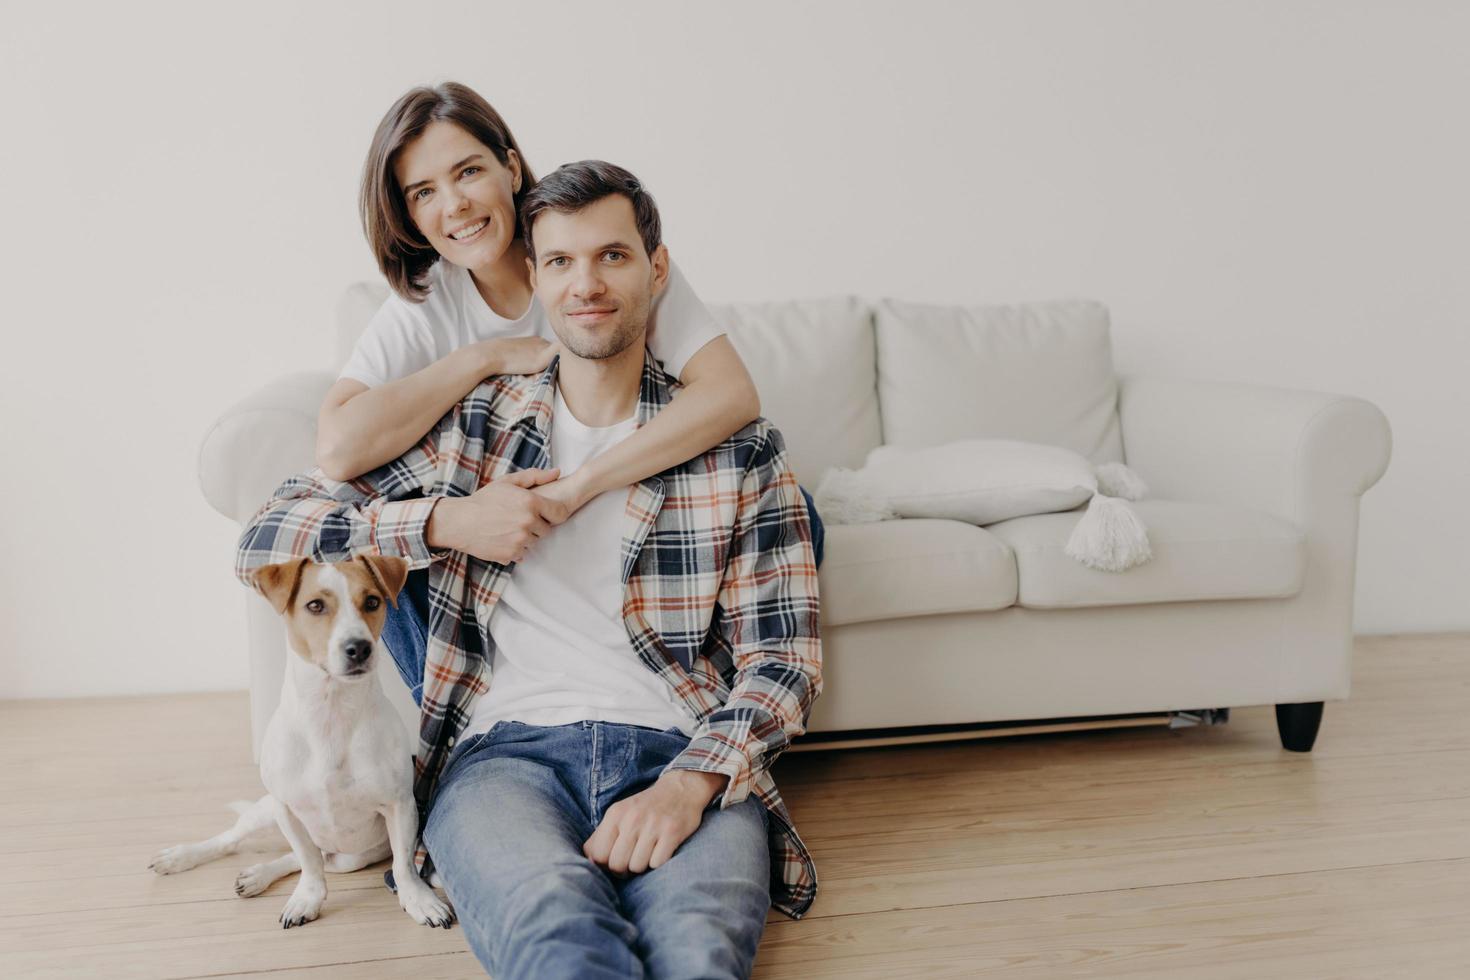 Foto einer glücklichen Frau umarmt ihren Mann, posiert auf dem Sofa, kleiner Hund sitzt auf dem Boden neben dem Besitzer, schaut alle mit glücklichen Gesichtsausdrücken in die Kamera, hat eine romantische Beziehung. Familienporträt. Menschen und Heimat